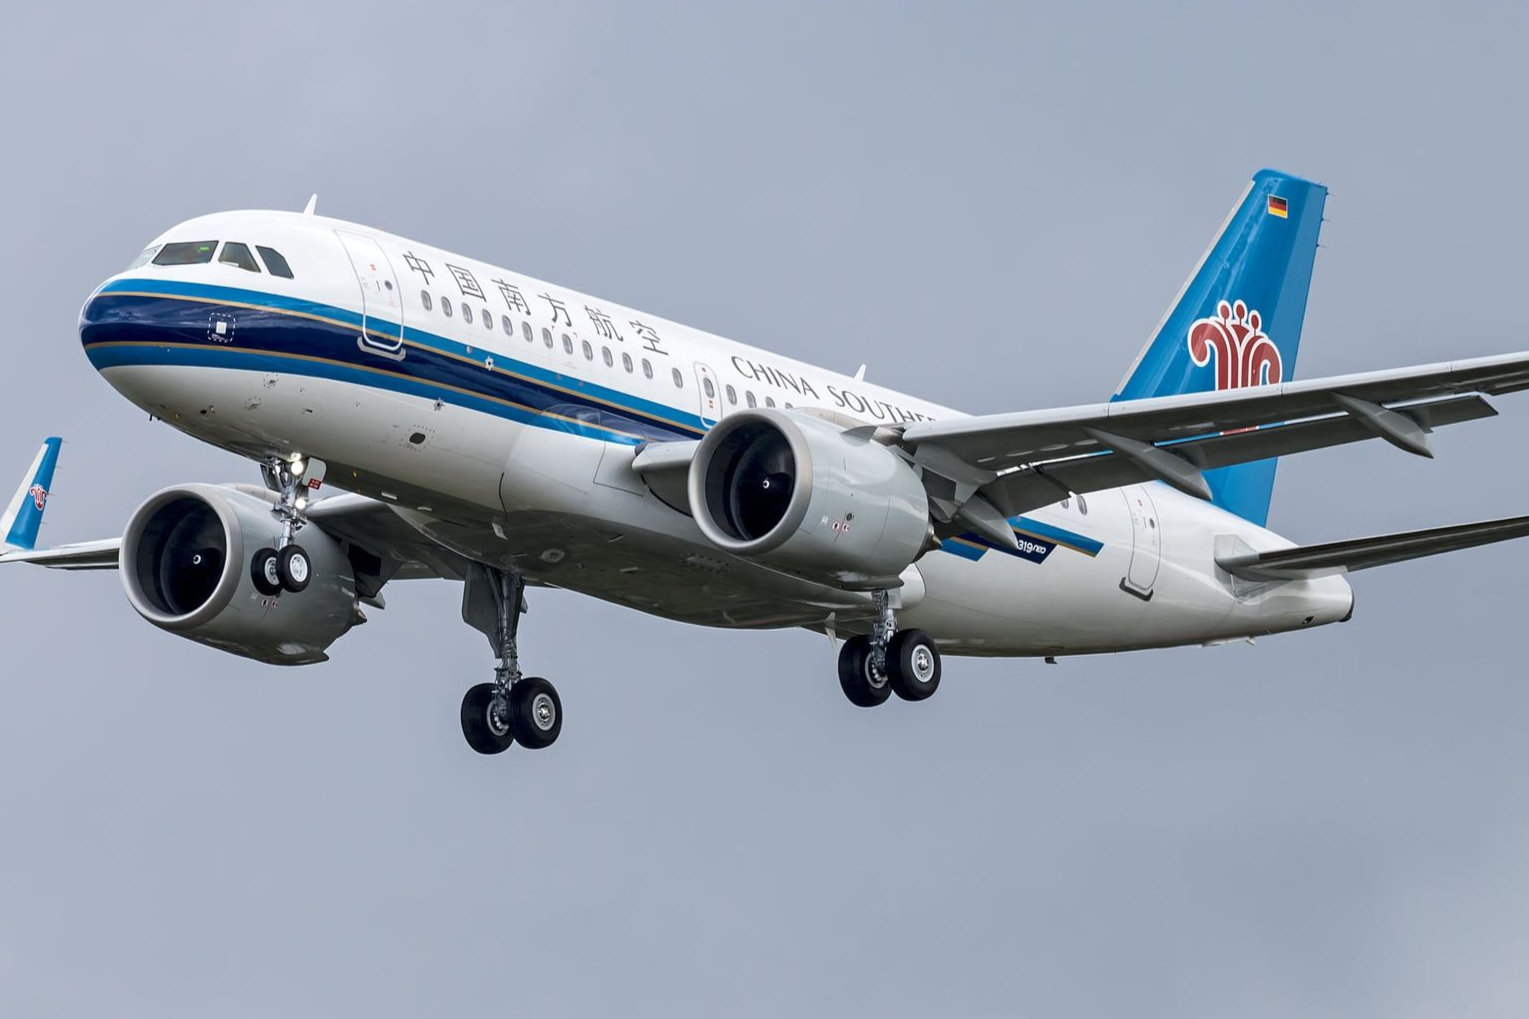 首架a319neo型客机在天津试飞,预计下月交付南航,祝贺升级换代